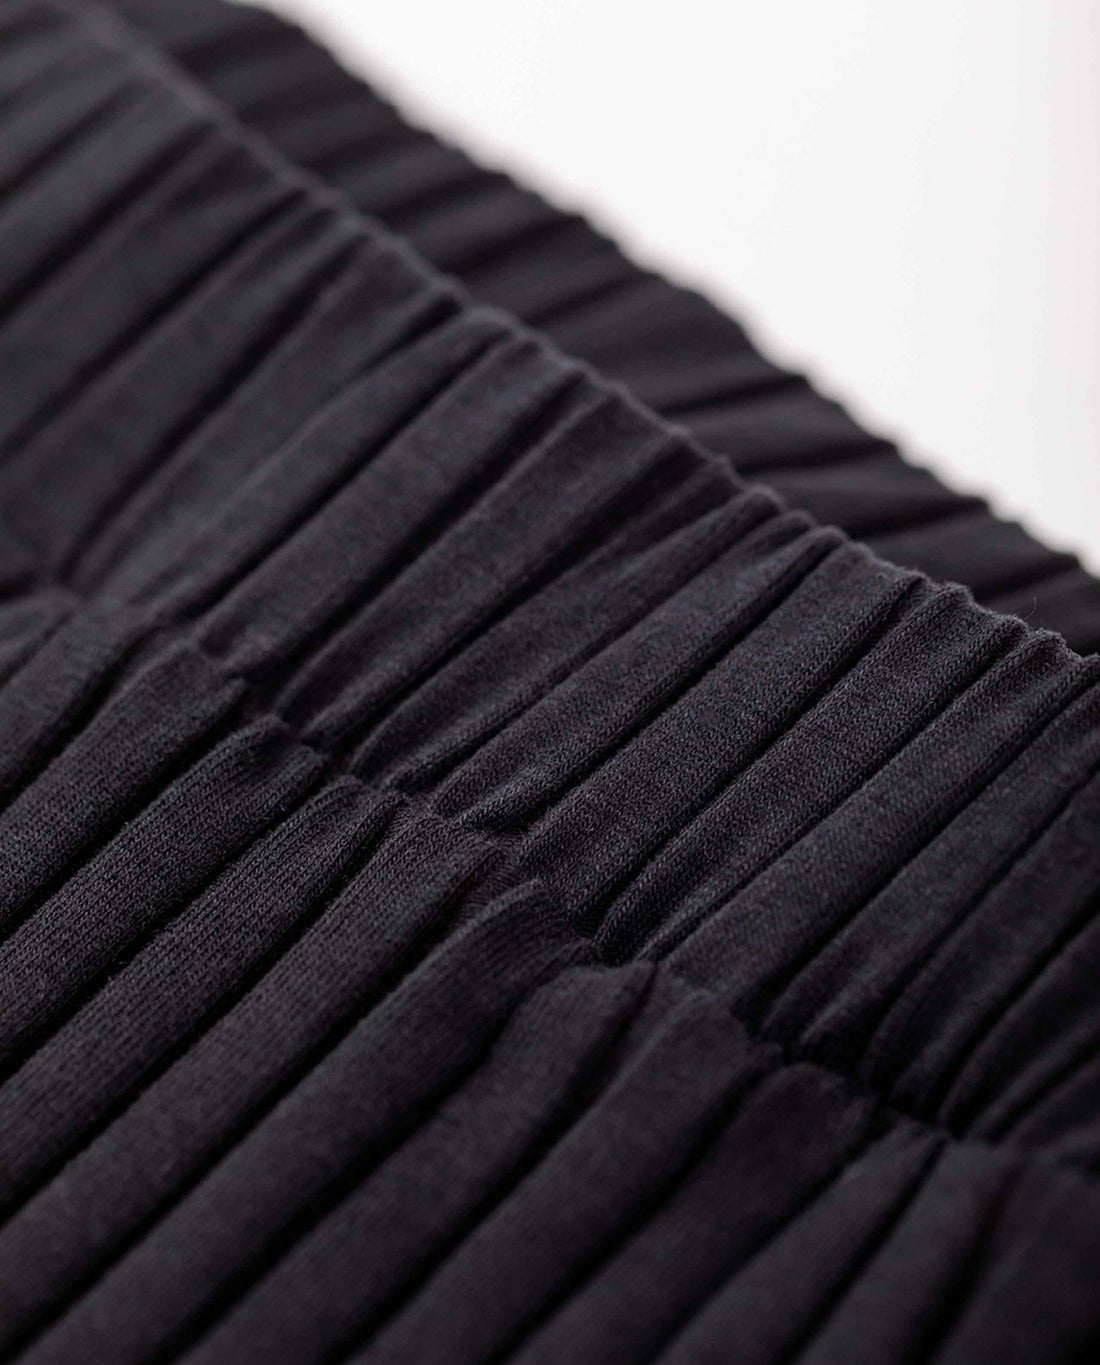 marché commun rotholz pantalon femme loungewear coton biologique côtelé noir